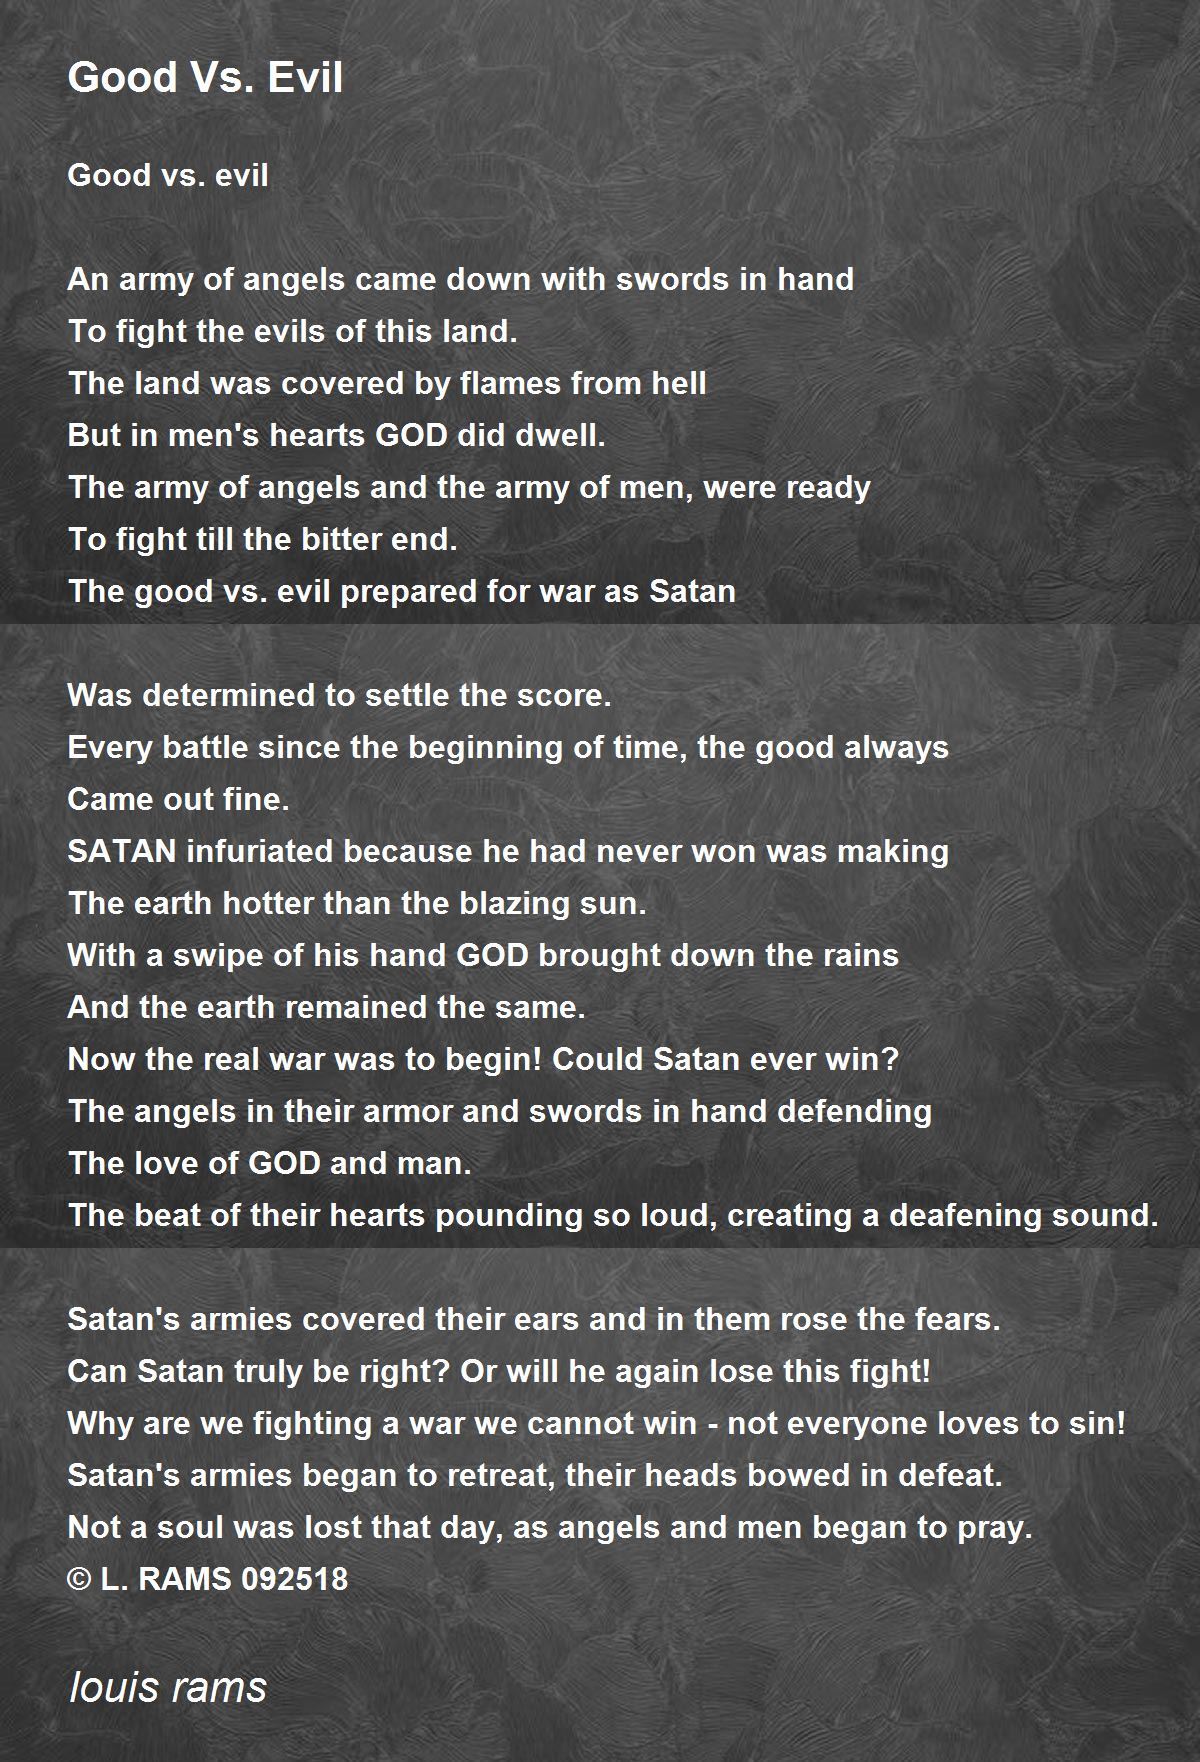 Good Vs Evil Poem By Louis Rams